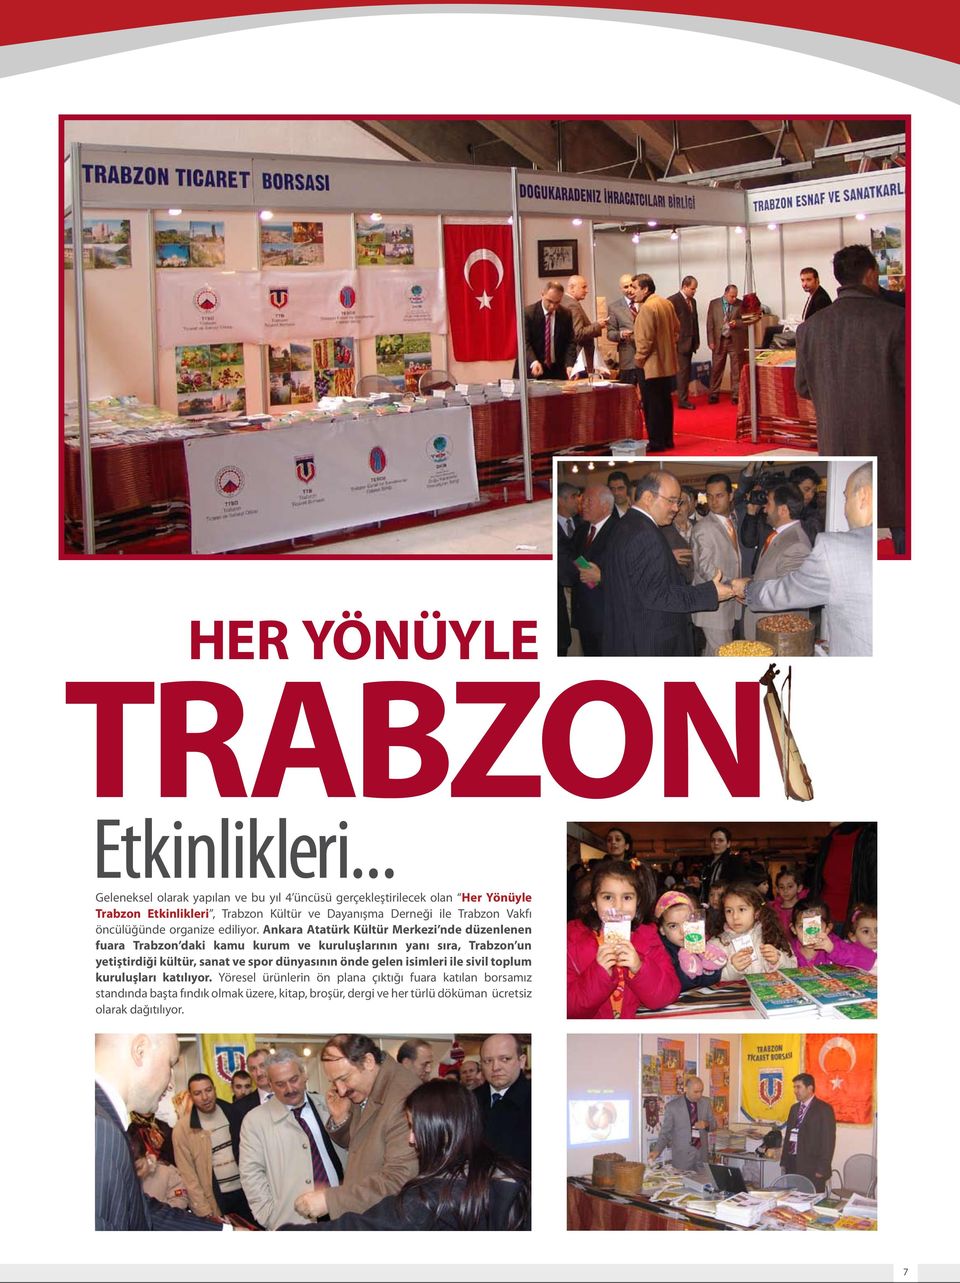 Trabzon Vakfı öncülüğünde organize ediliyor.